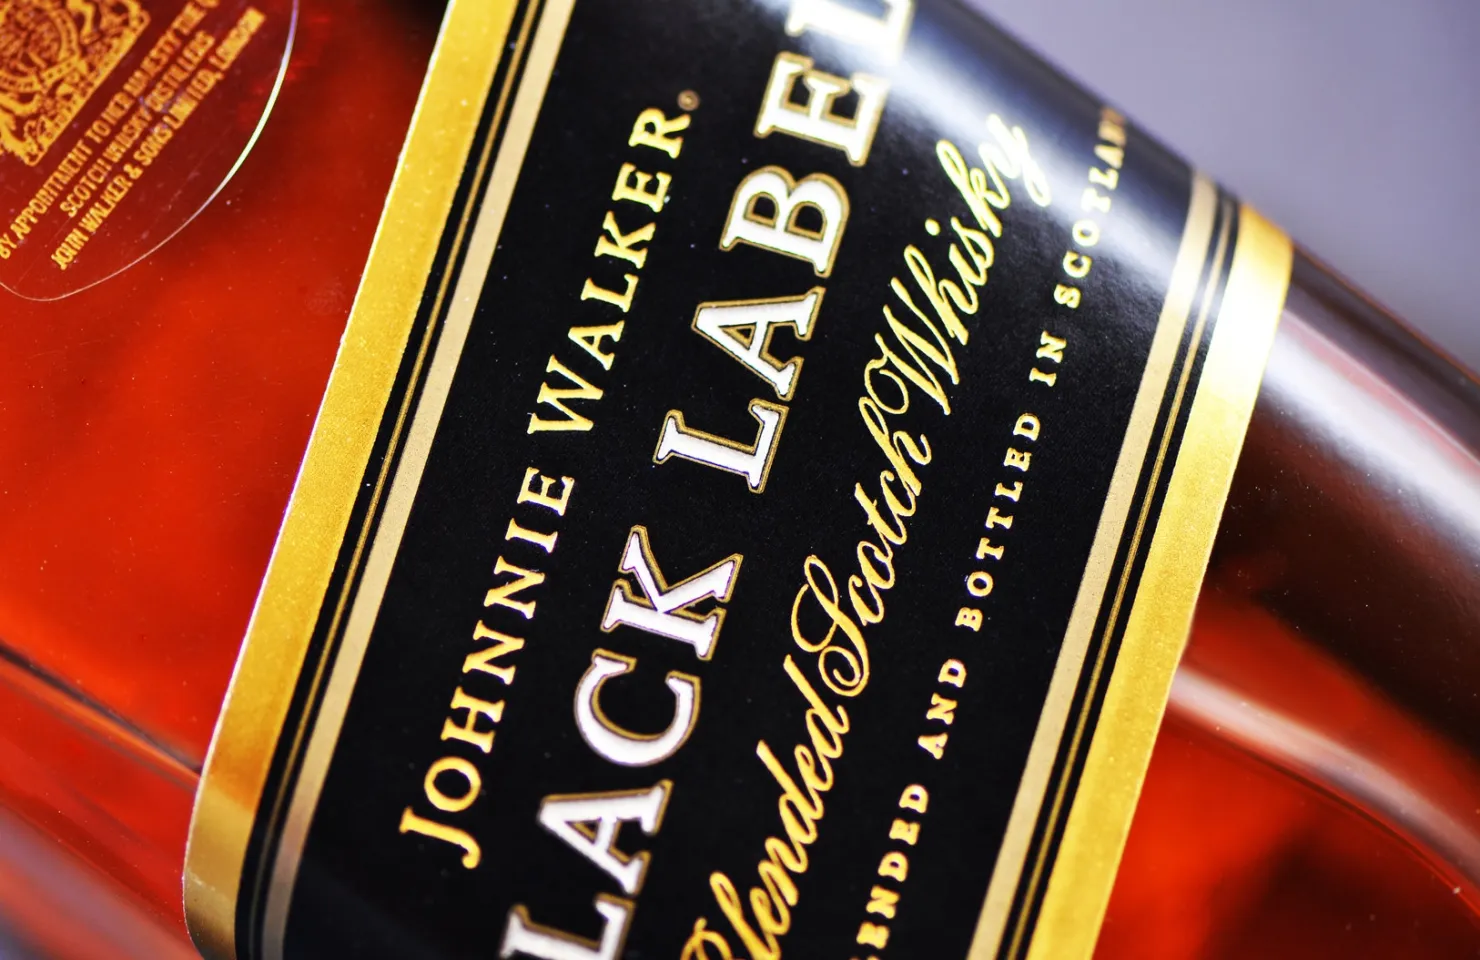 Whisky Johnnie Walker Upgrade no aluguer de Iates de Luxo